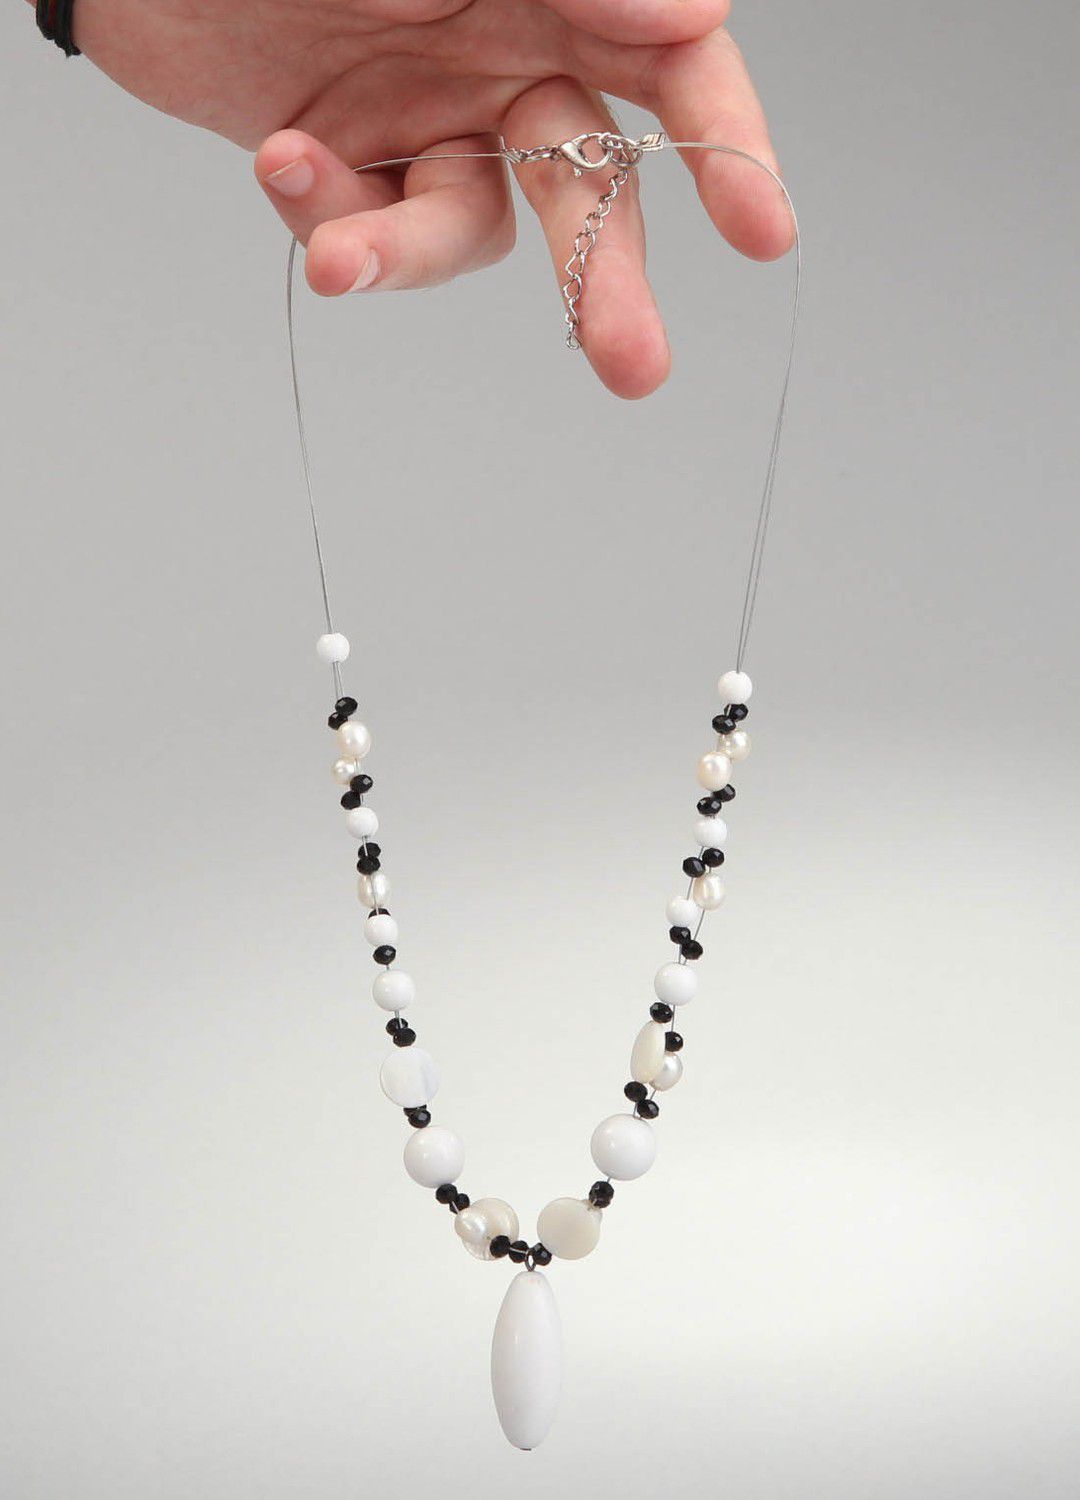 Stylish handmade necklace photo 4